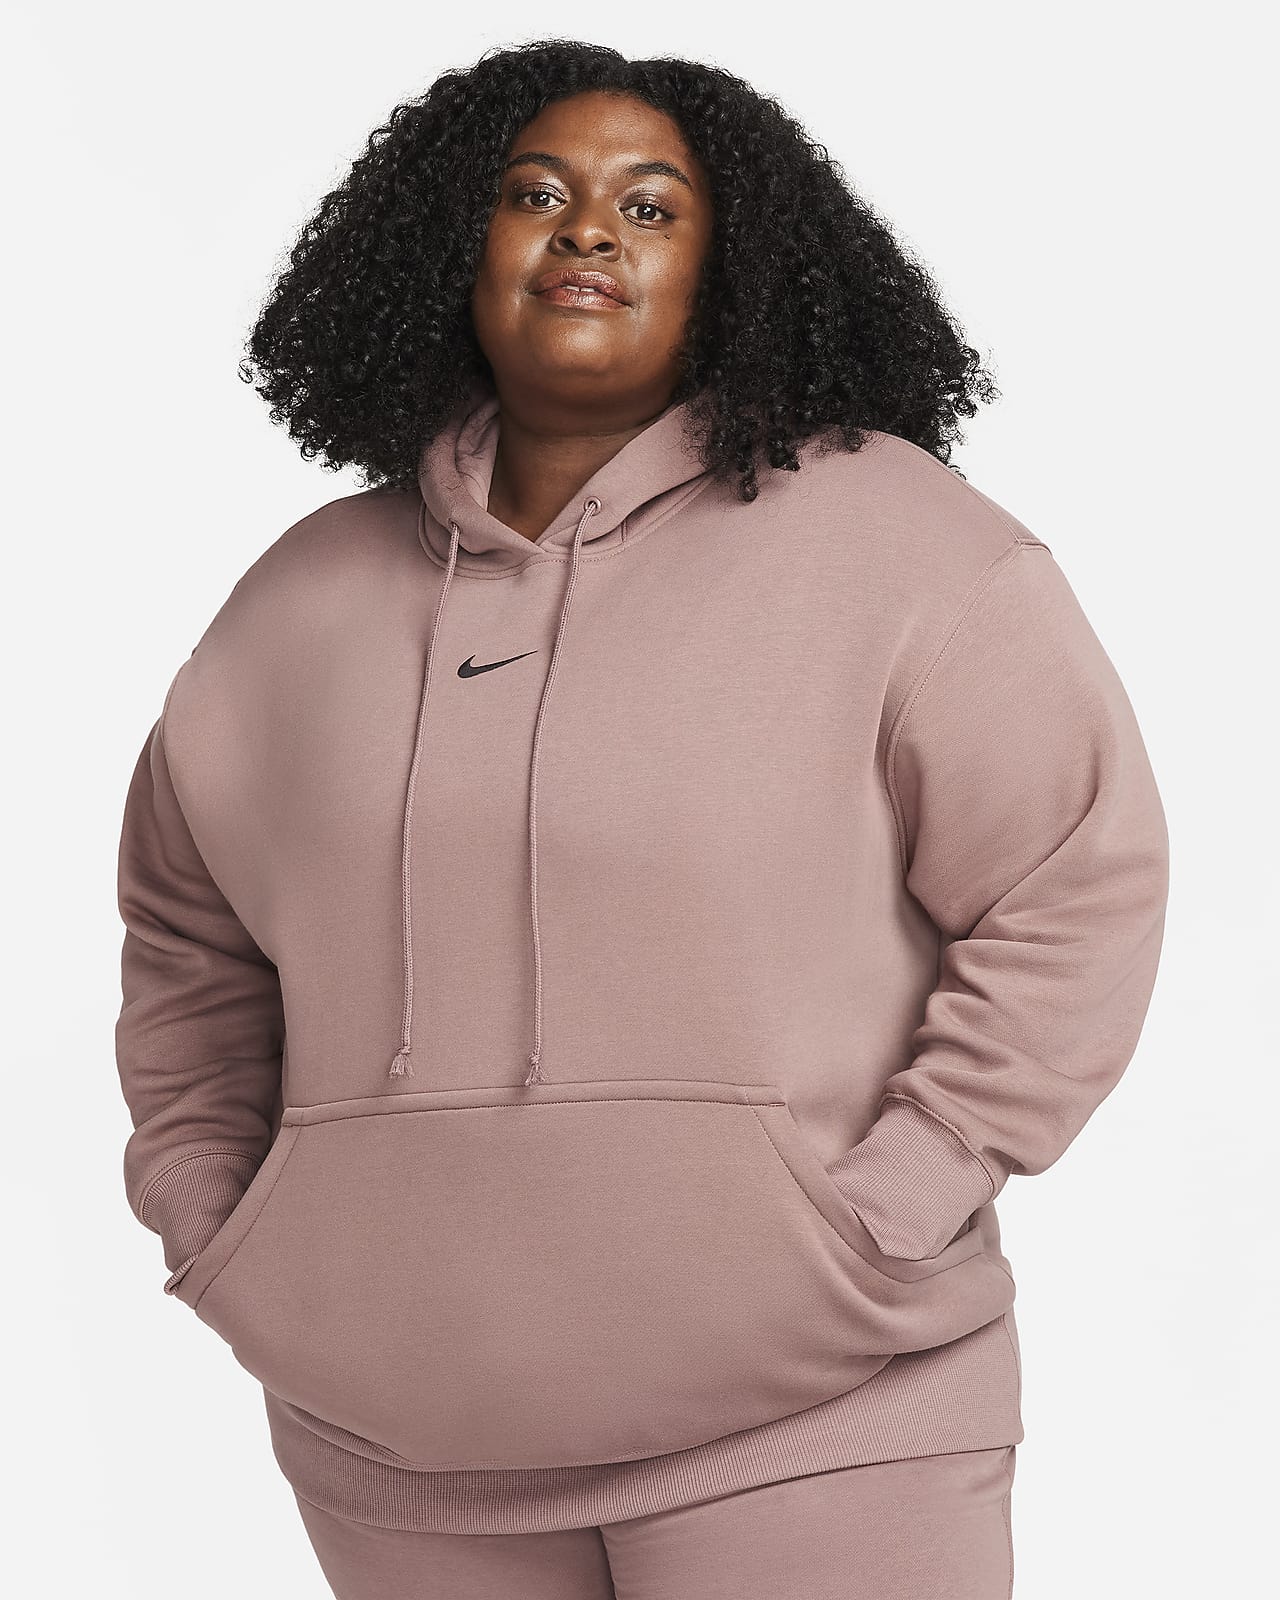 Γυναικείο φούτερ με κουκούλα σε φαρδιά γραμμή Nike Sportswear Phoenix Fleece (μεγάλα μεγέθη)